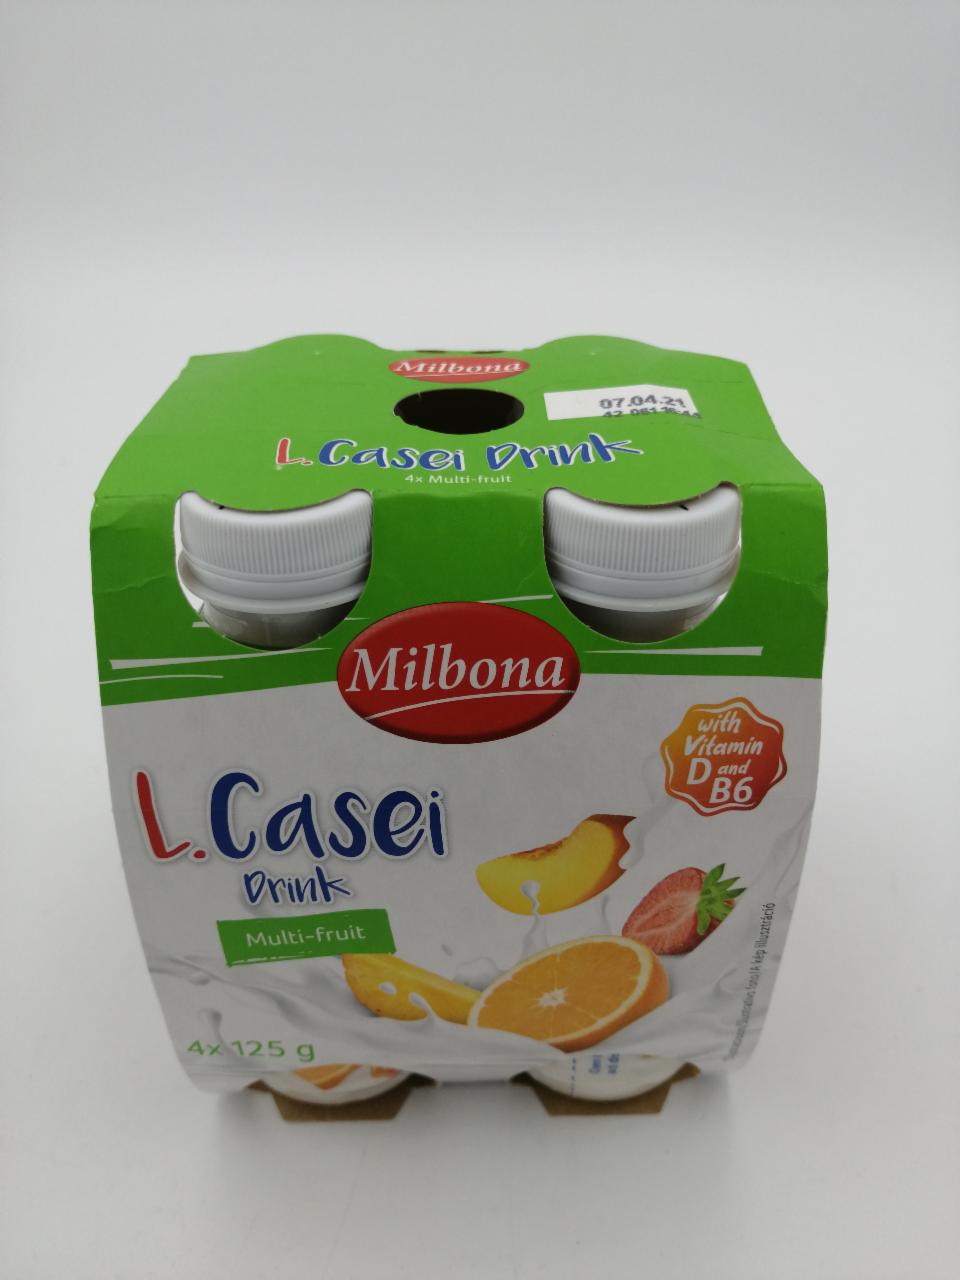 Fotografie - L.Casei mixed fruits Milbona